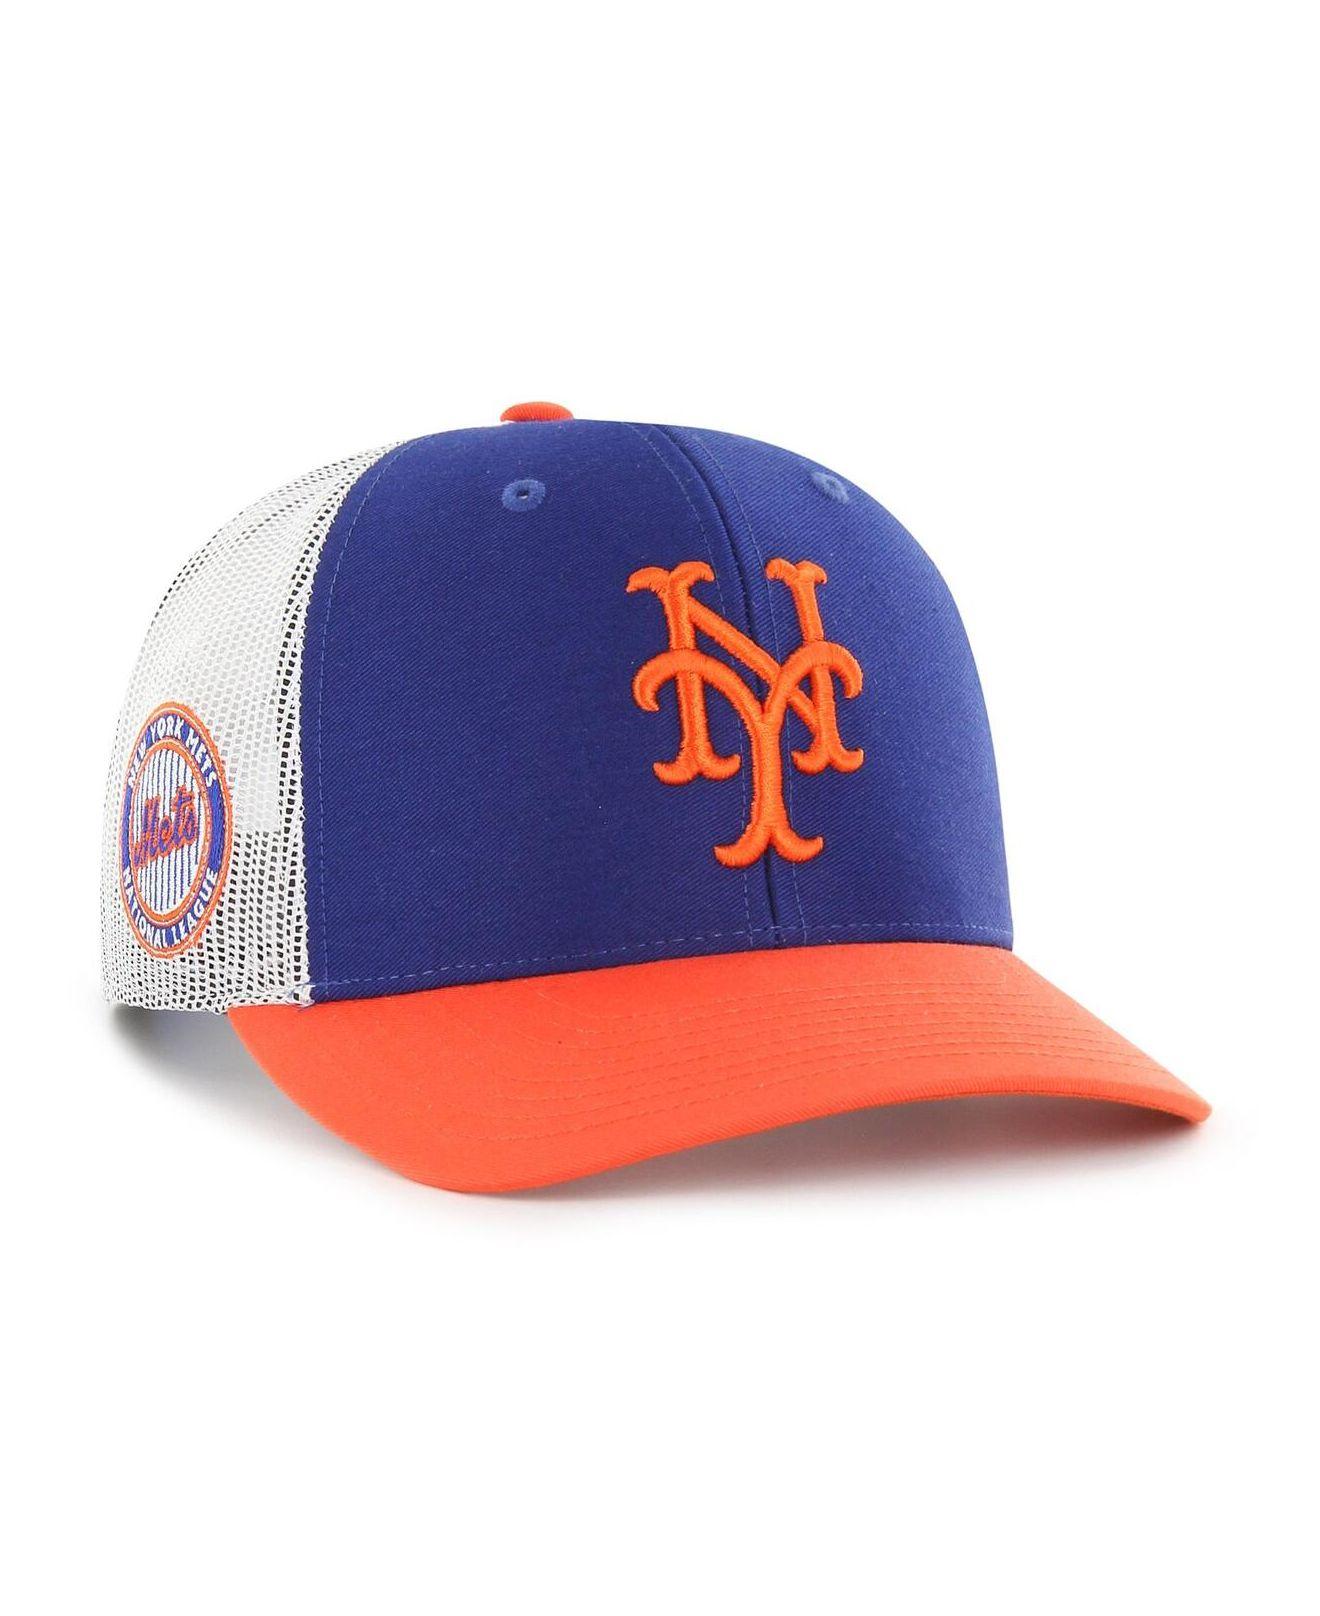 Men's New York Islanders '47 Orange Clean Up Adjustable Hat